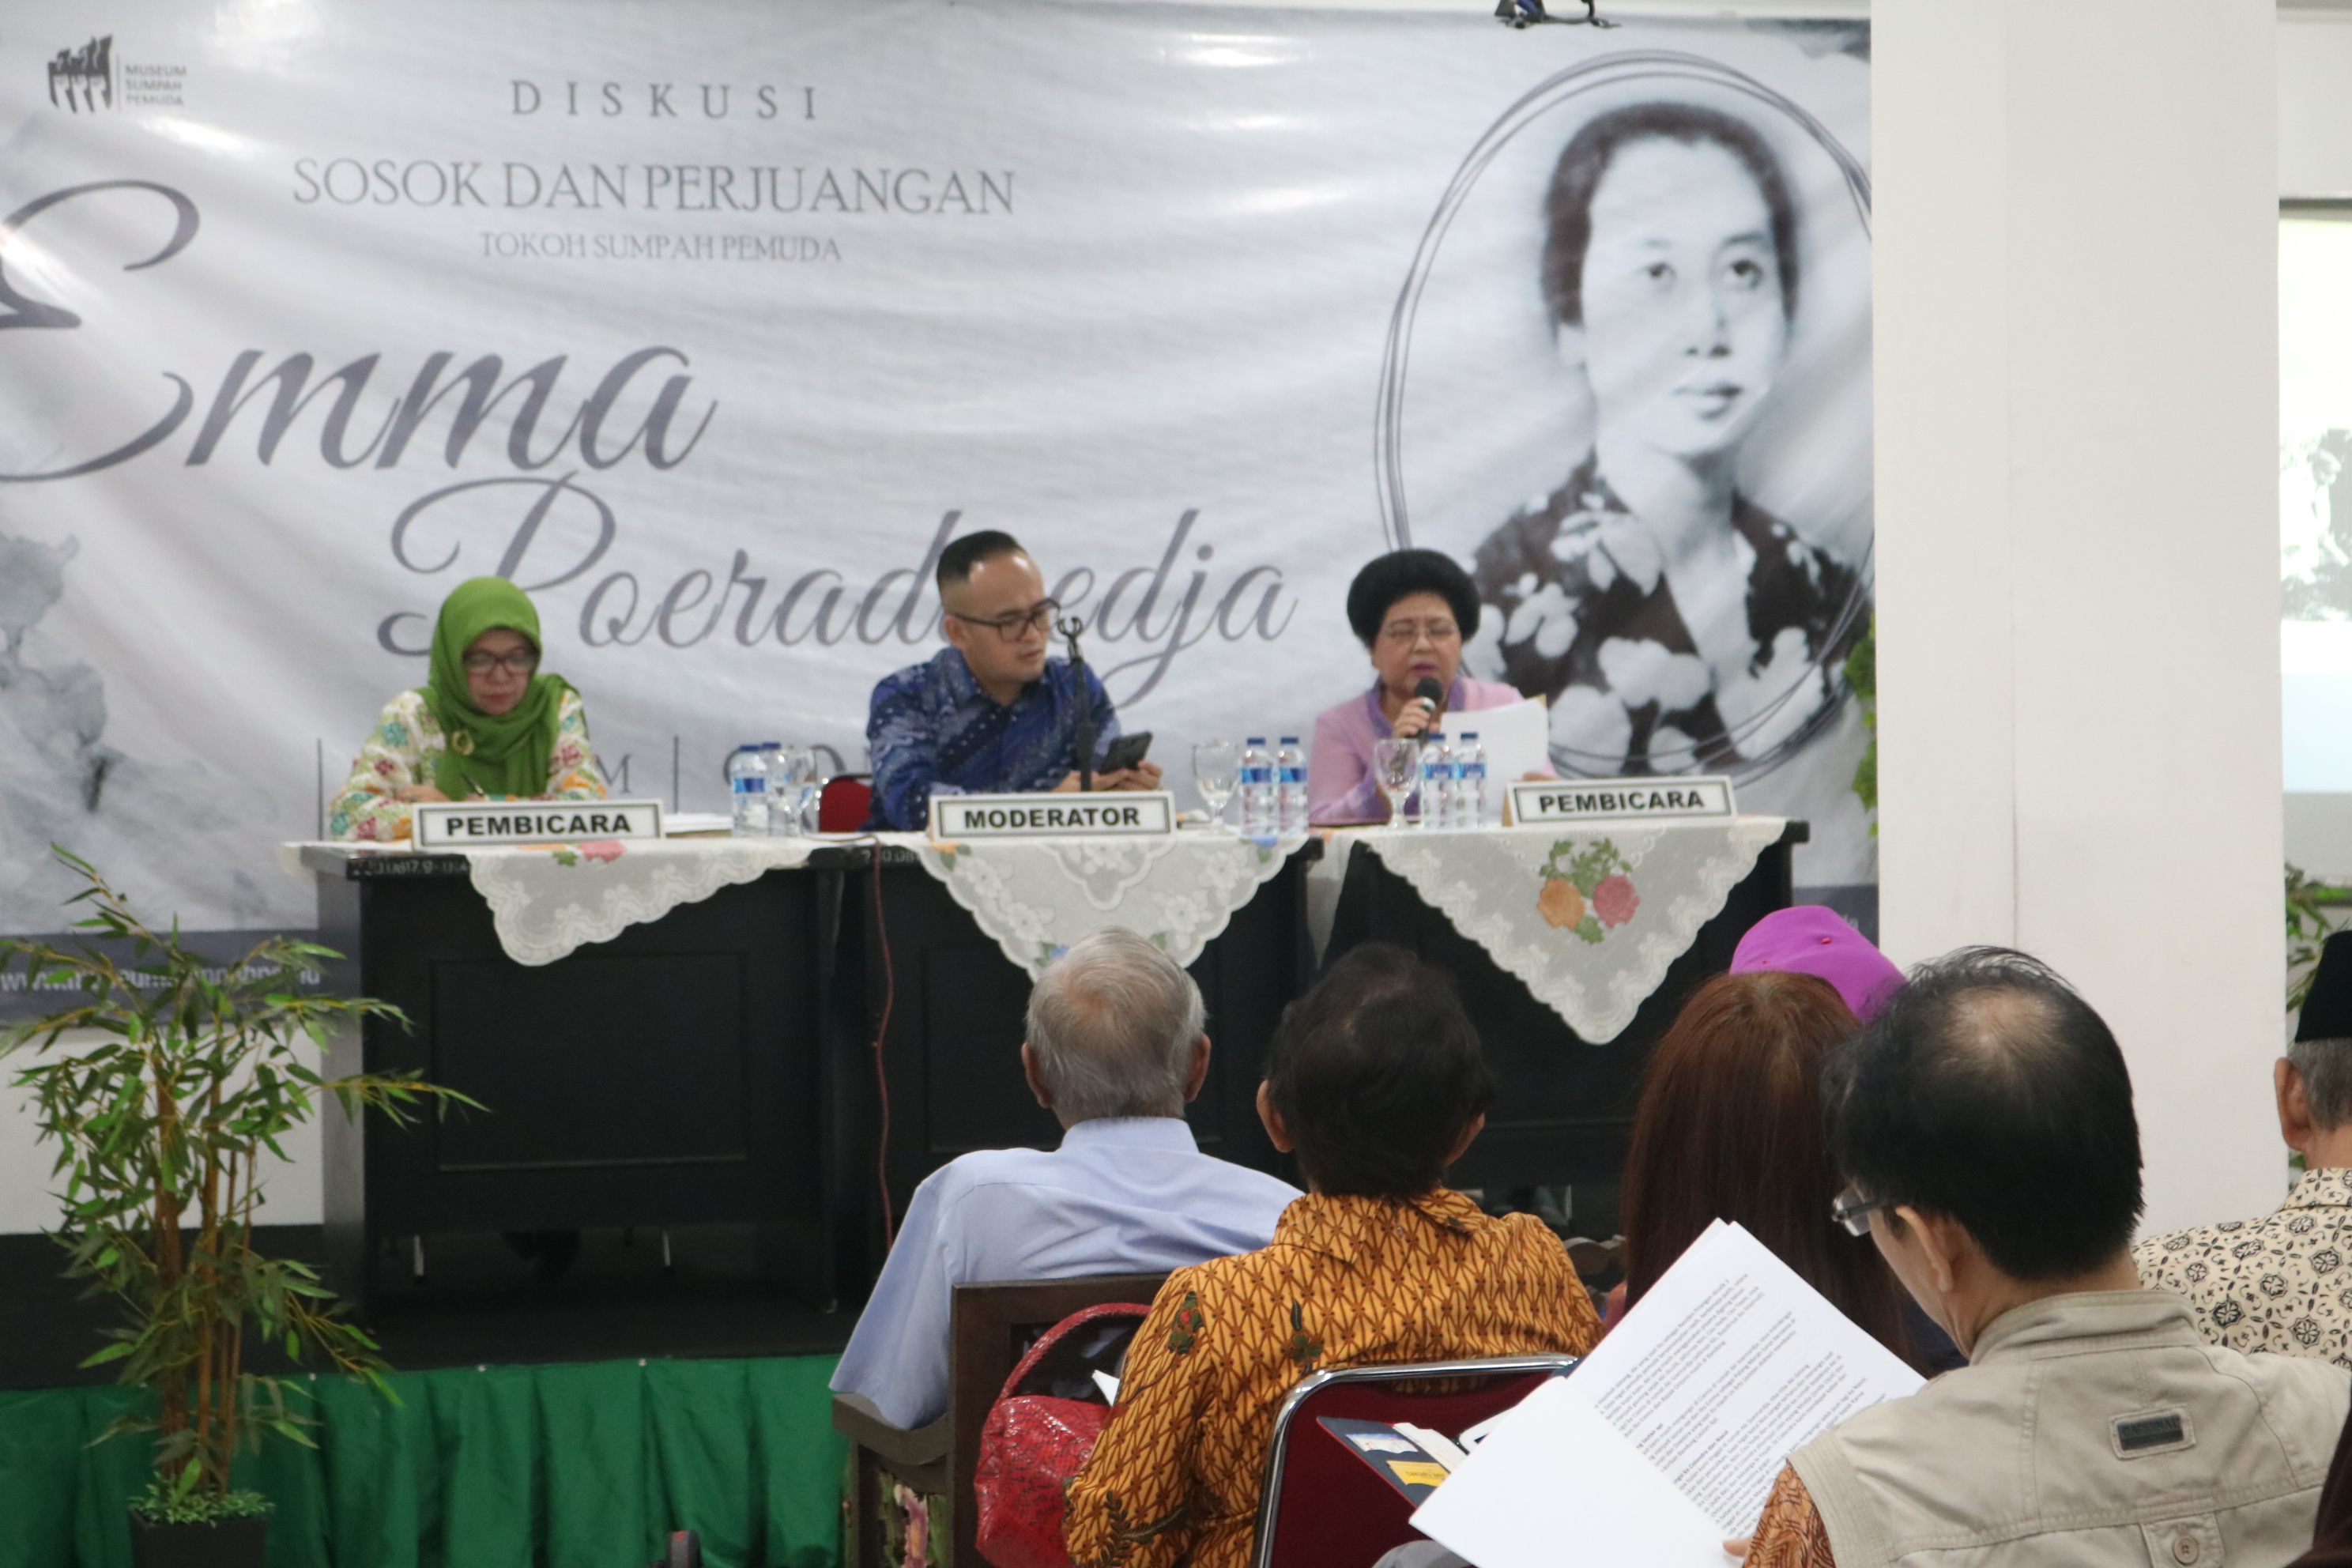 Read more about the article Diskusi Sosok dan Perjuangan Tokoh Sumpah Pemuda Emma Poeradiredja